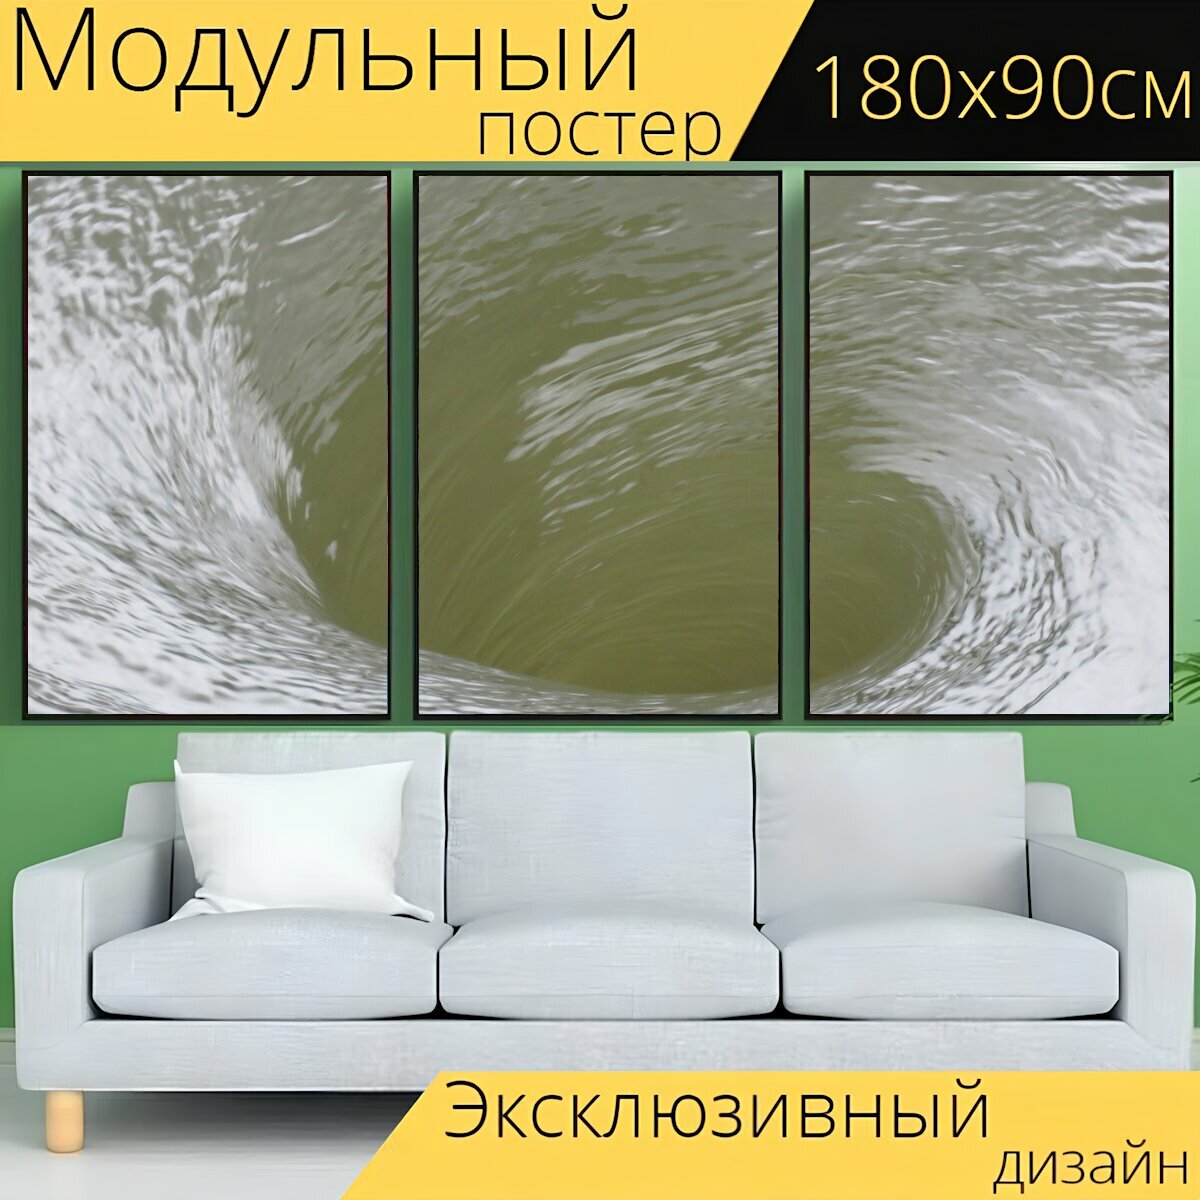 Модульный постер "Водоворот, водный поток, поверхность воды" 180 x 90 см. для интерьера